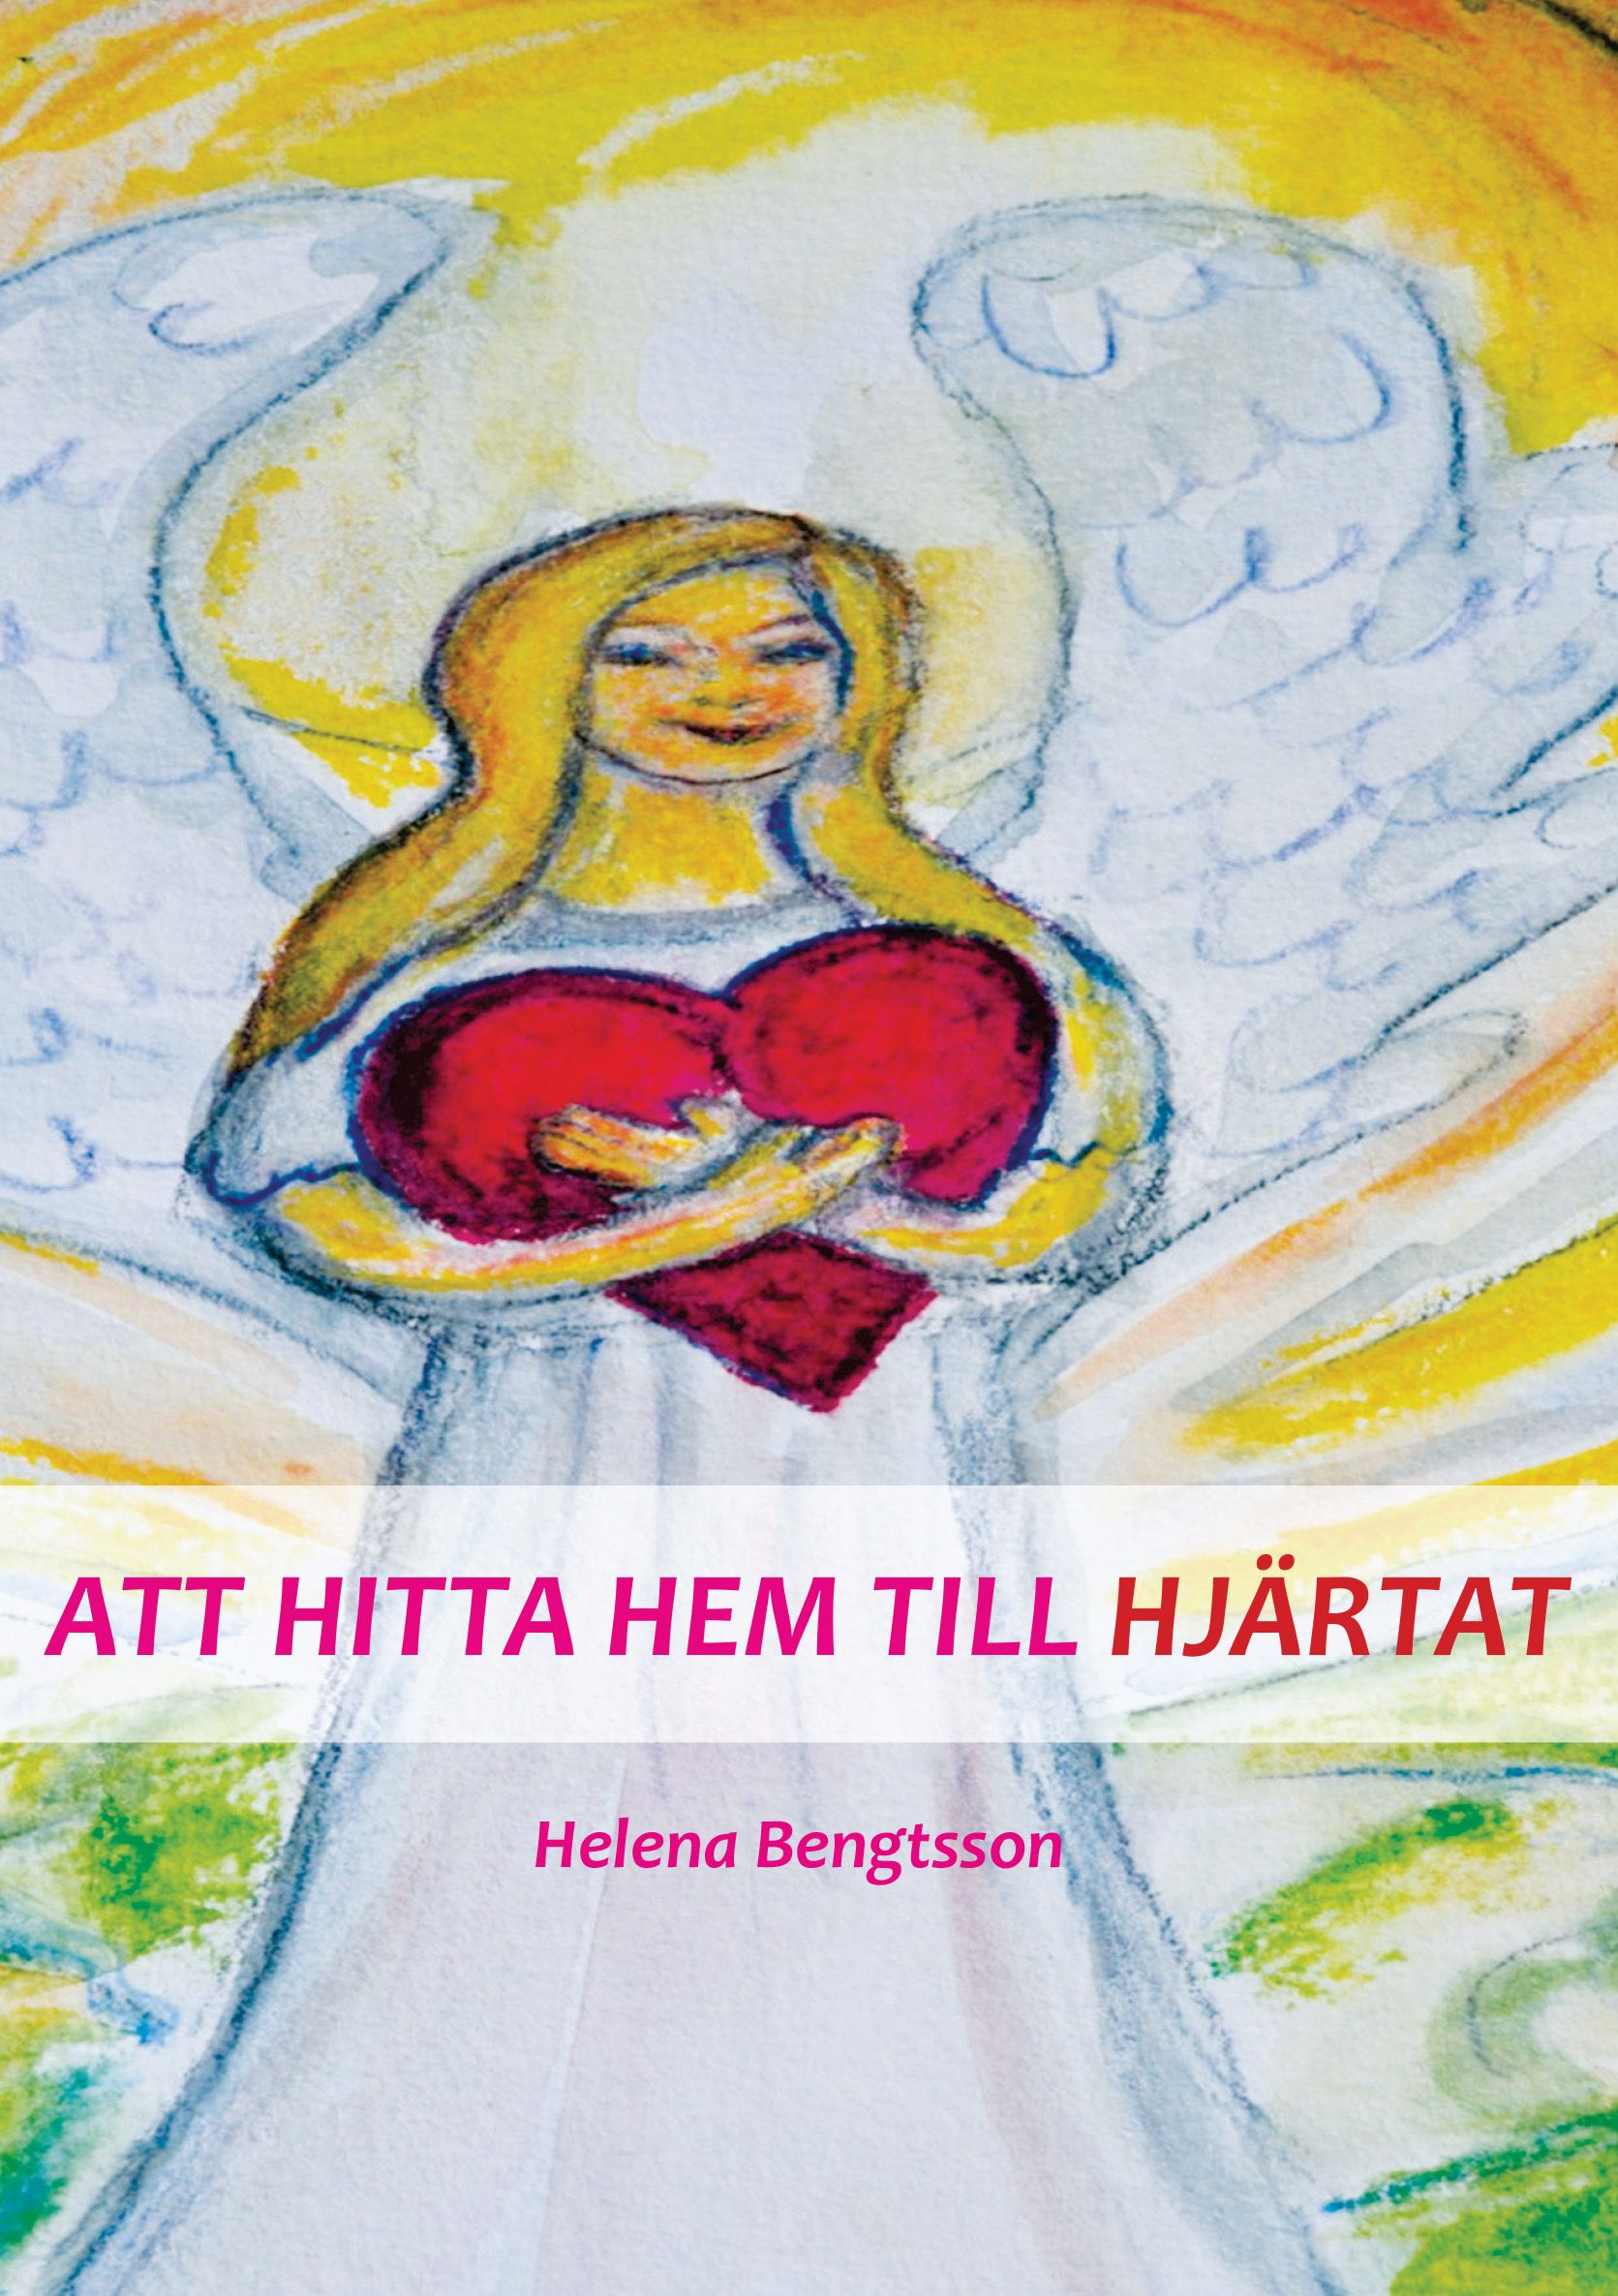 ATT HITTA HEM TILL HJÄRTAT, eBook by Helena Bengtsson